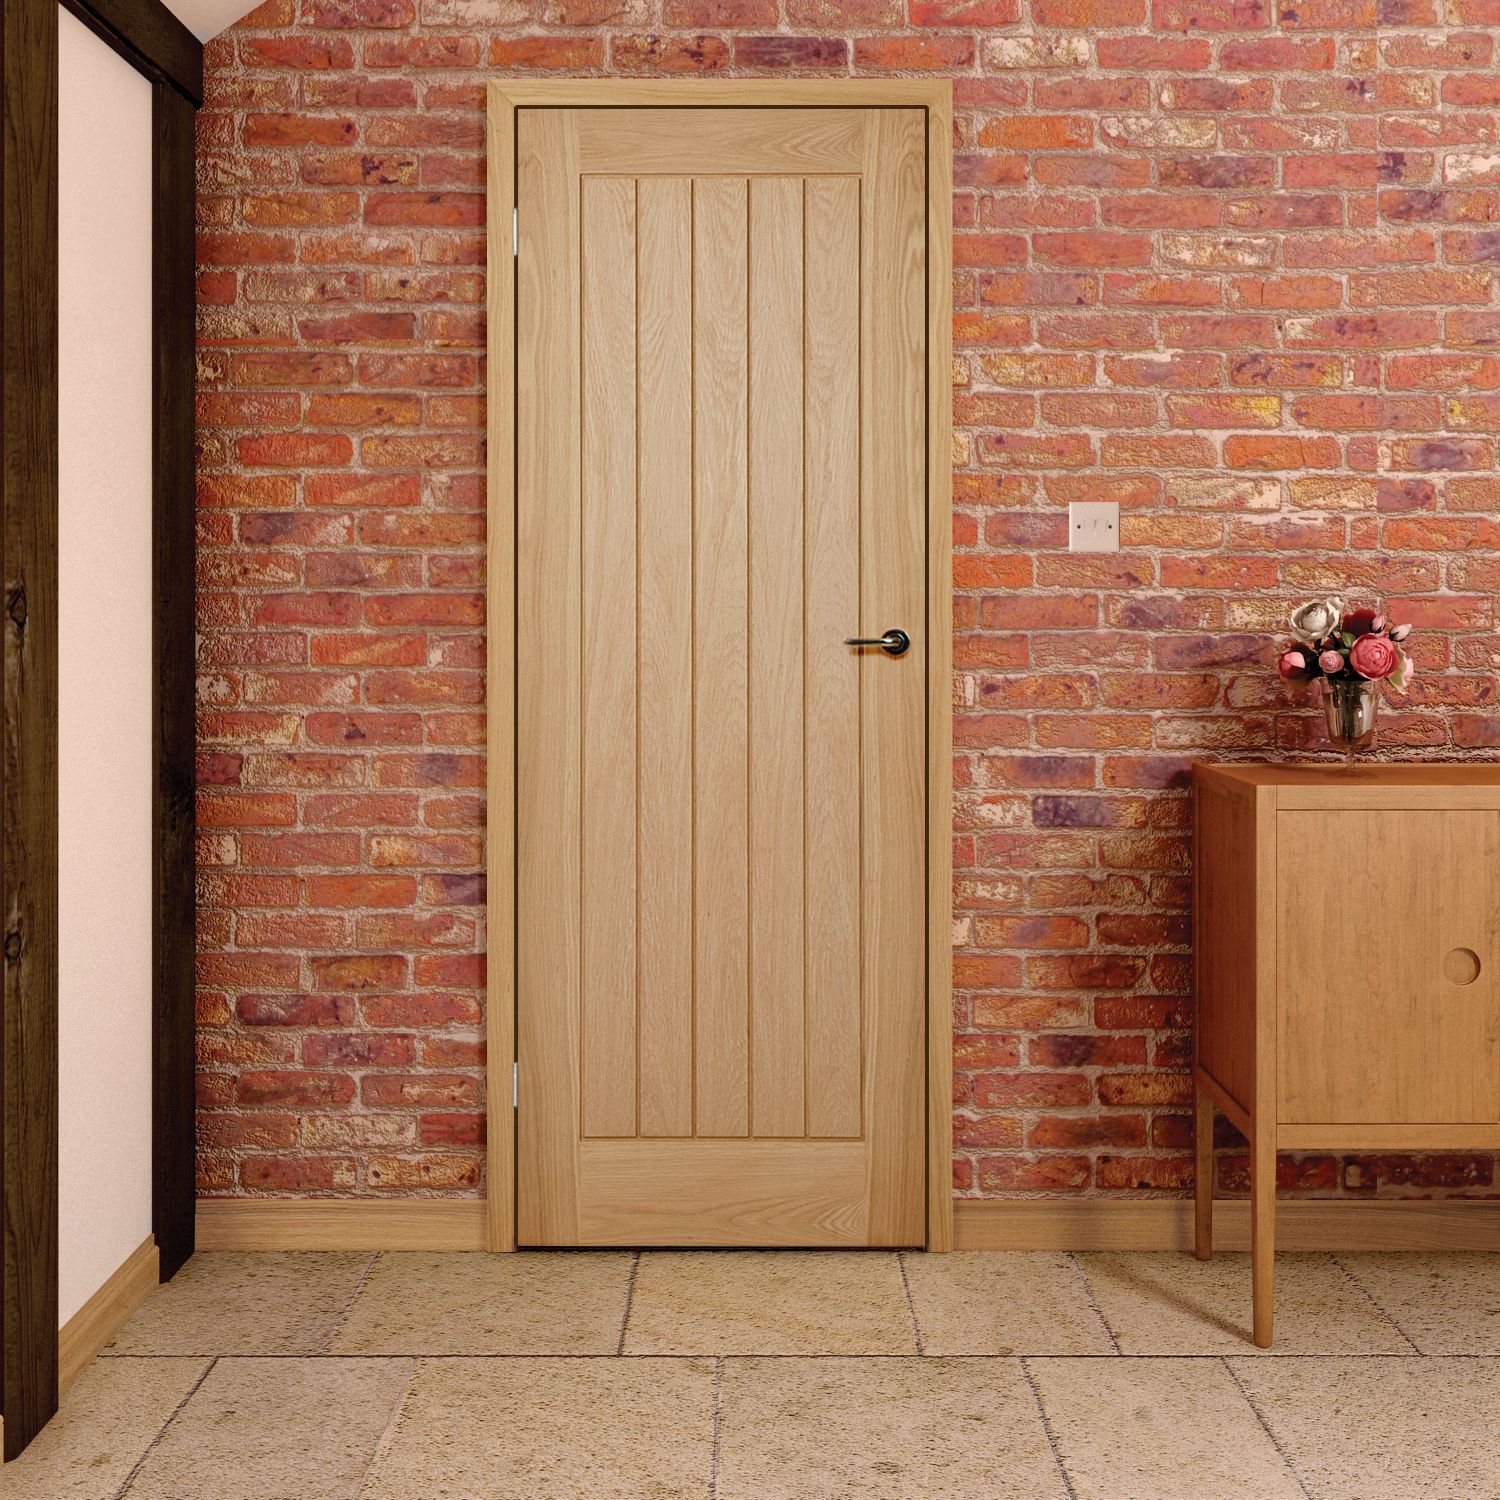 Fortia Unglazed Cottage Oak veneer Internal Door, (H)1981mm (W)762mm (T)35mm